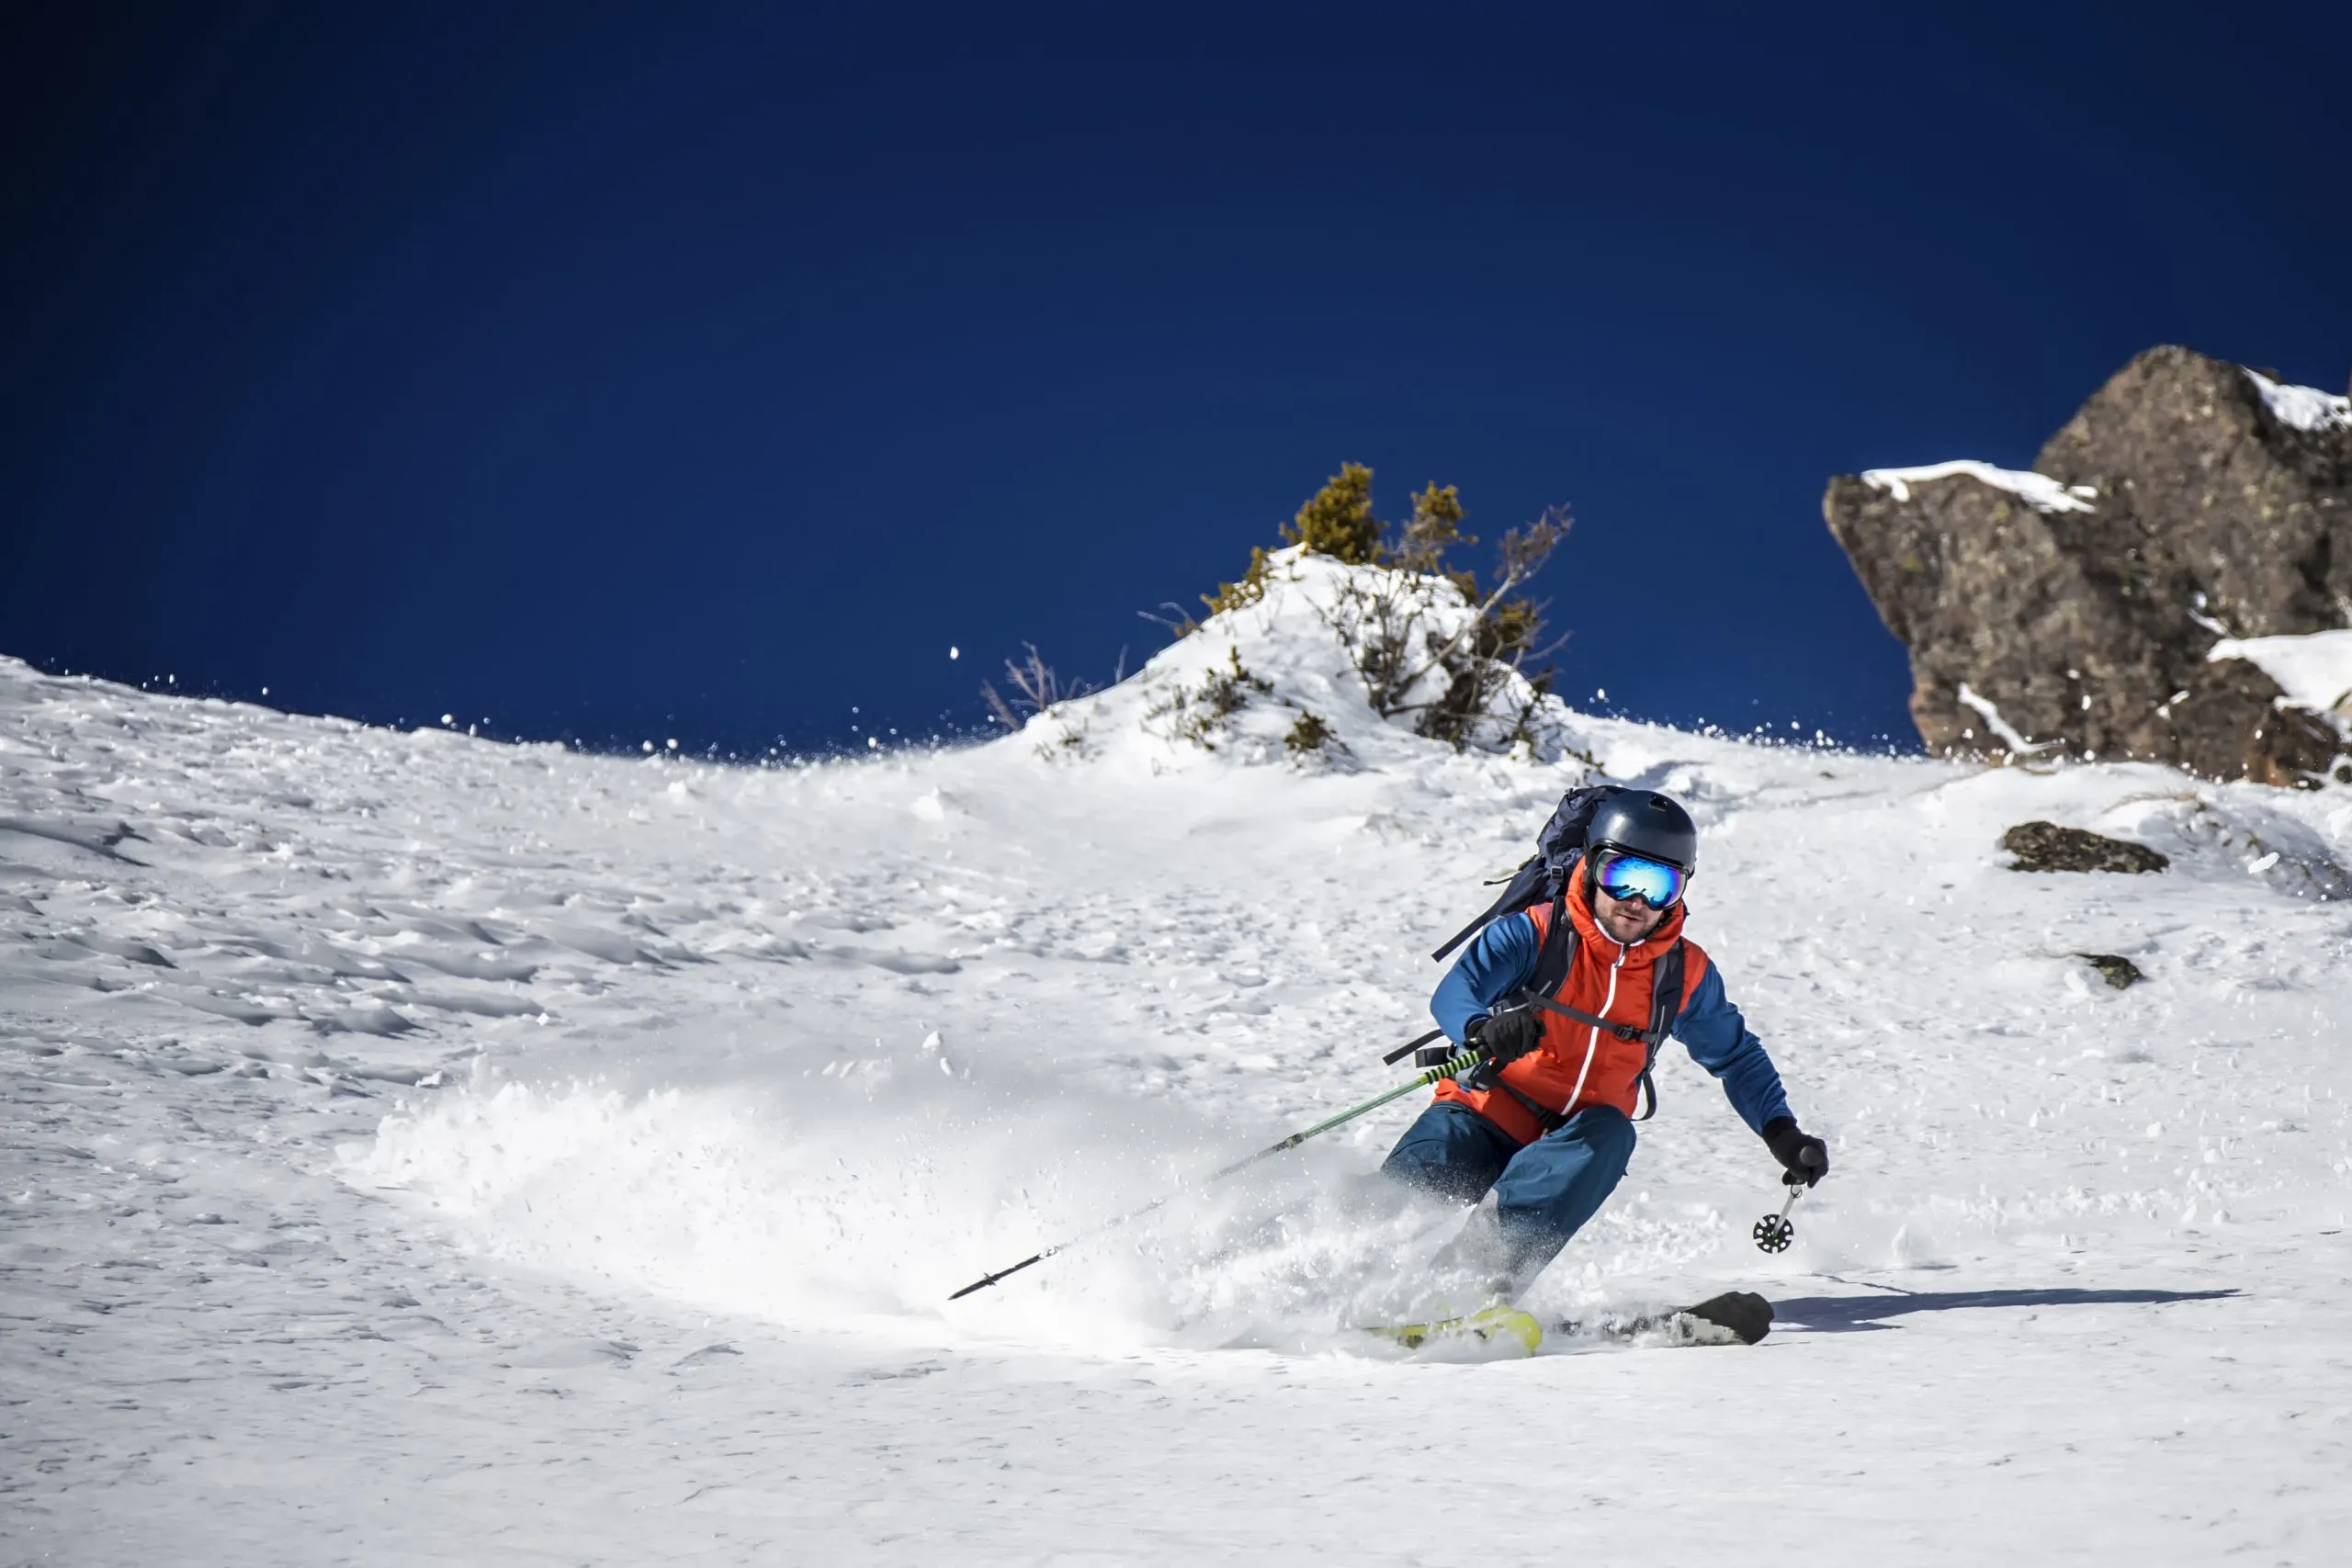 Expert freeride skier charging donw through steep slope